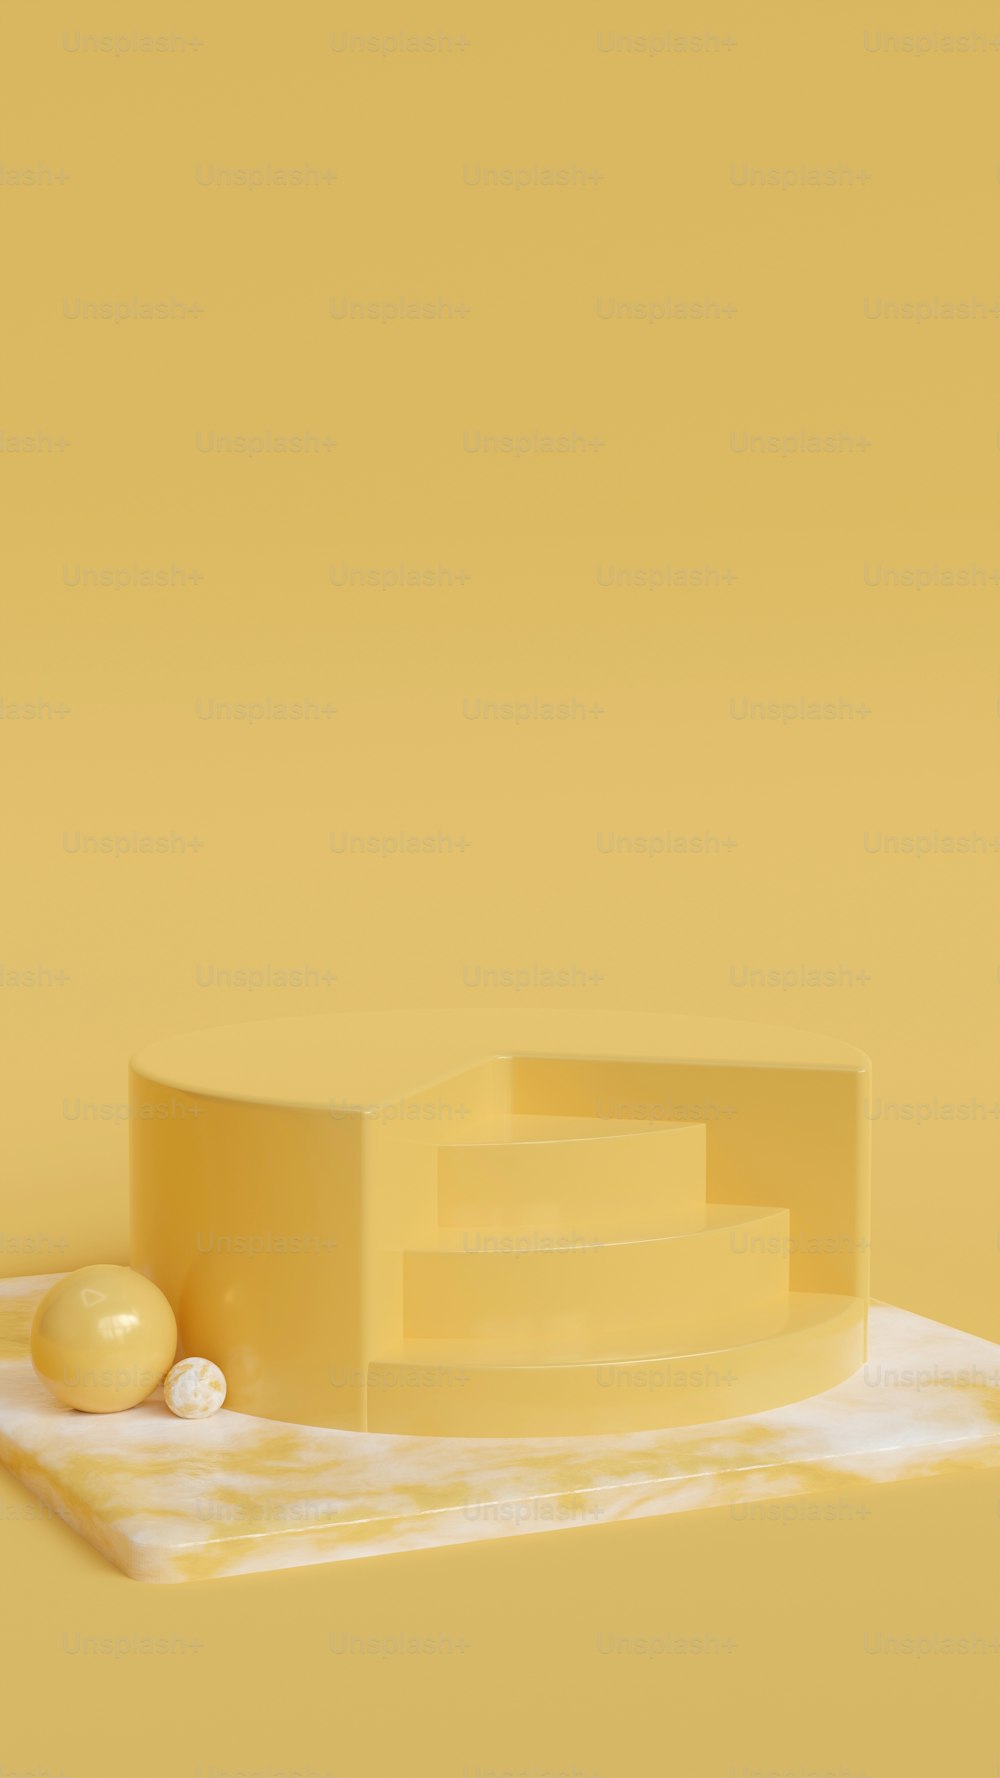 Ein Stück Käse auf einem Tisch